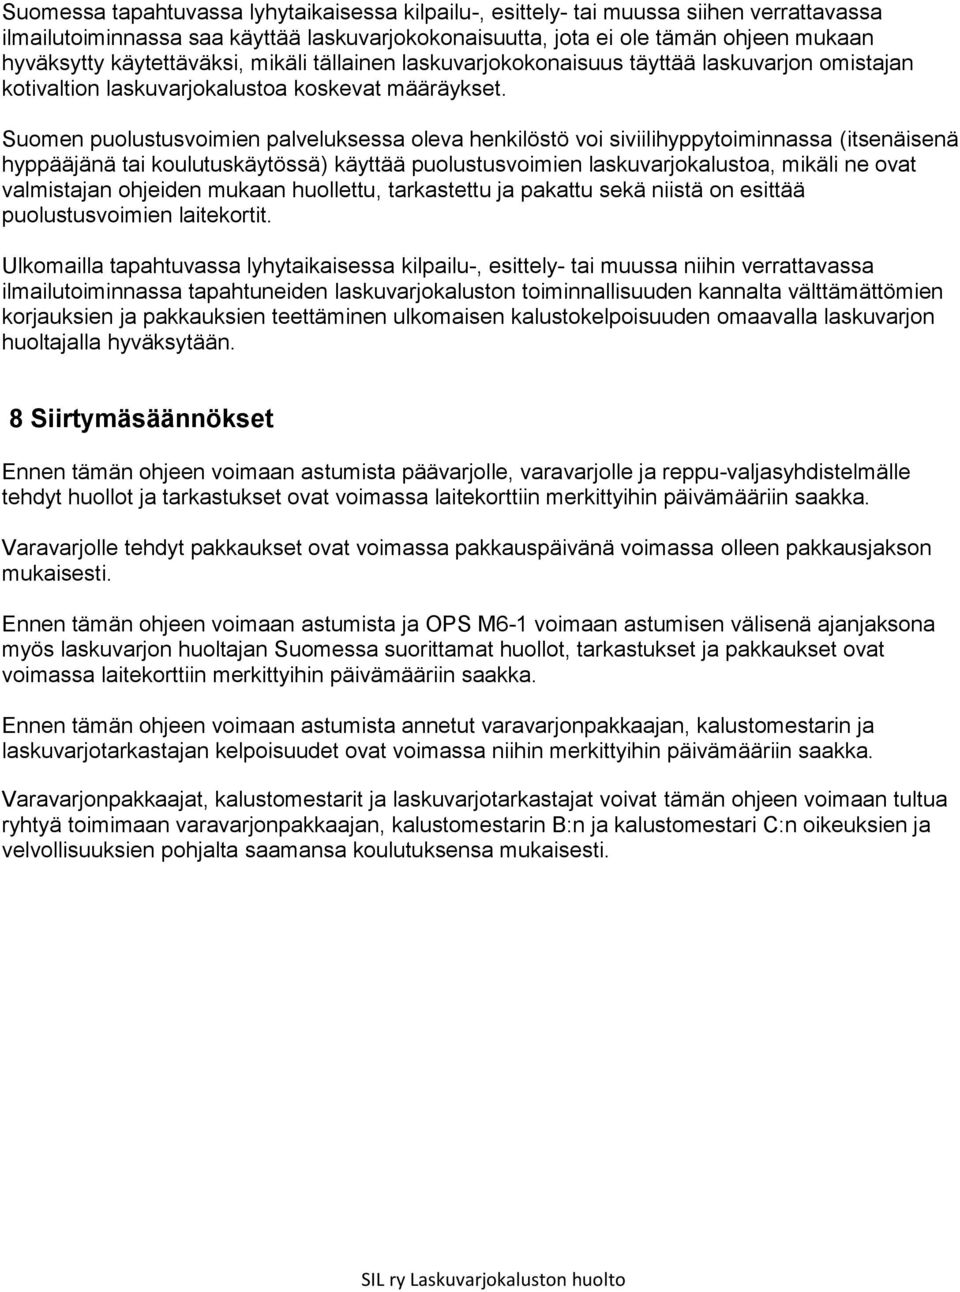 Suomen puolustusvoimien palveluksessa oleva henkilöstö voi siviilihyppytoiminnassa (itsenäisenä hyppääjänä tai koulutuskäytössä) käyttää puolustusvoimien laskuvarjokalustoa, mikäli ne ovat